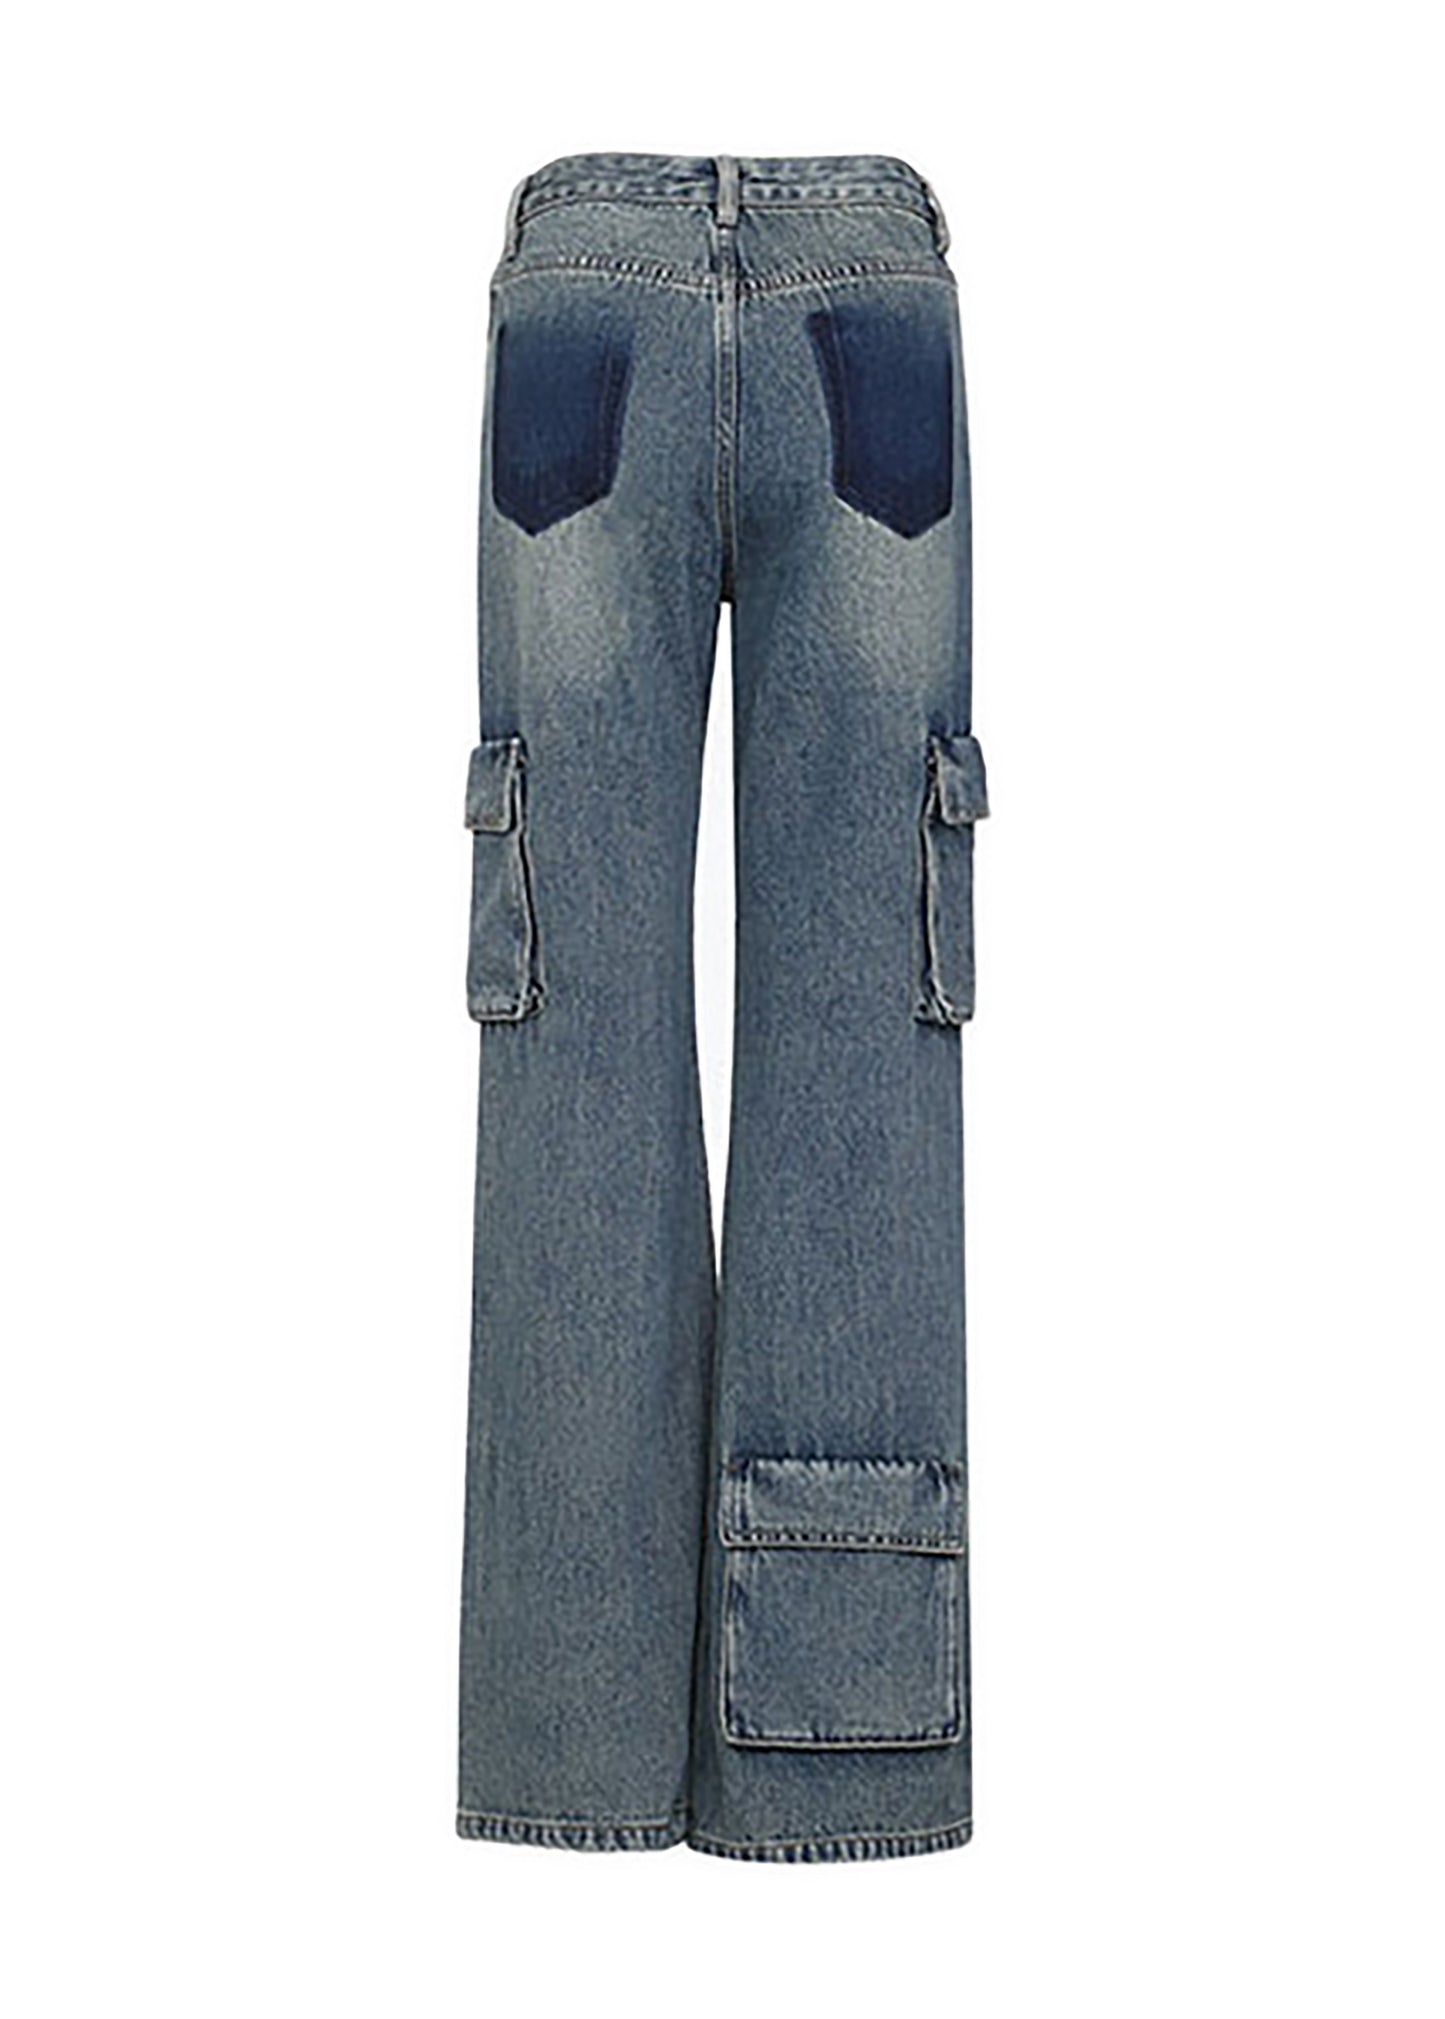 Vintage Multi-Pocket Cargo Jeans